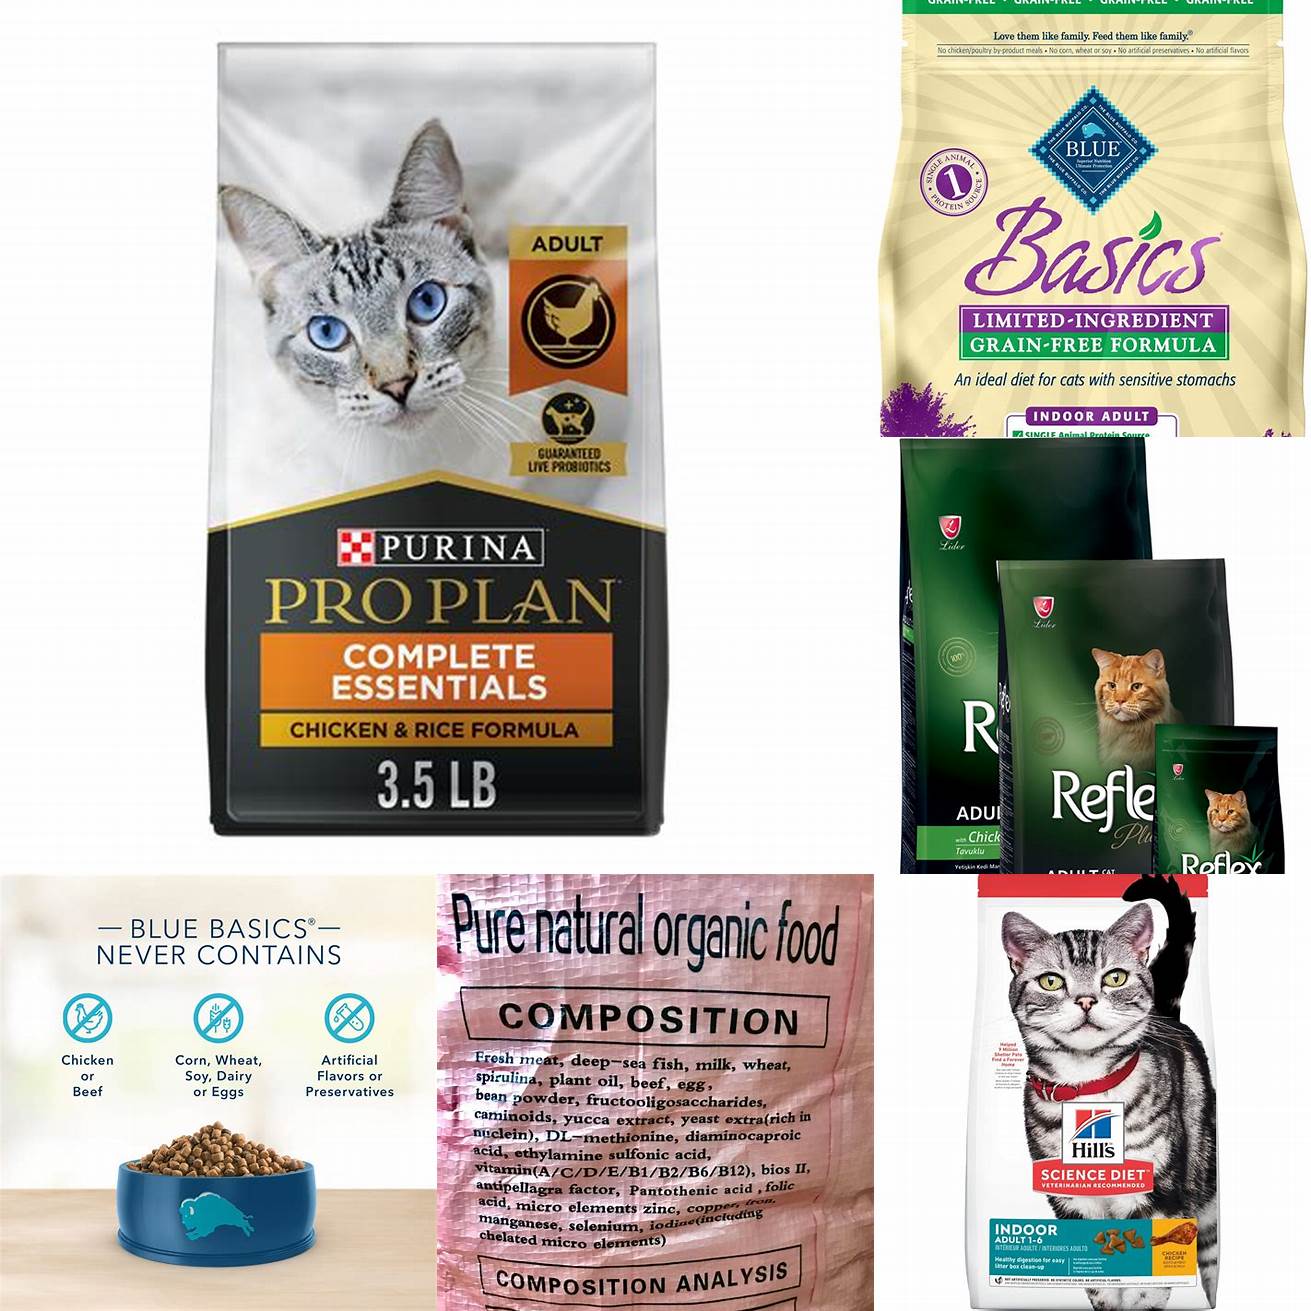 Adult cat food ingredients